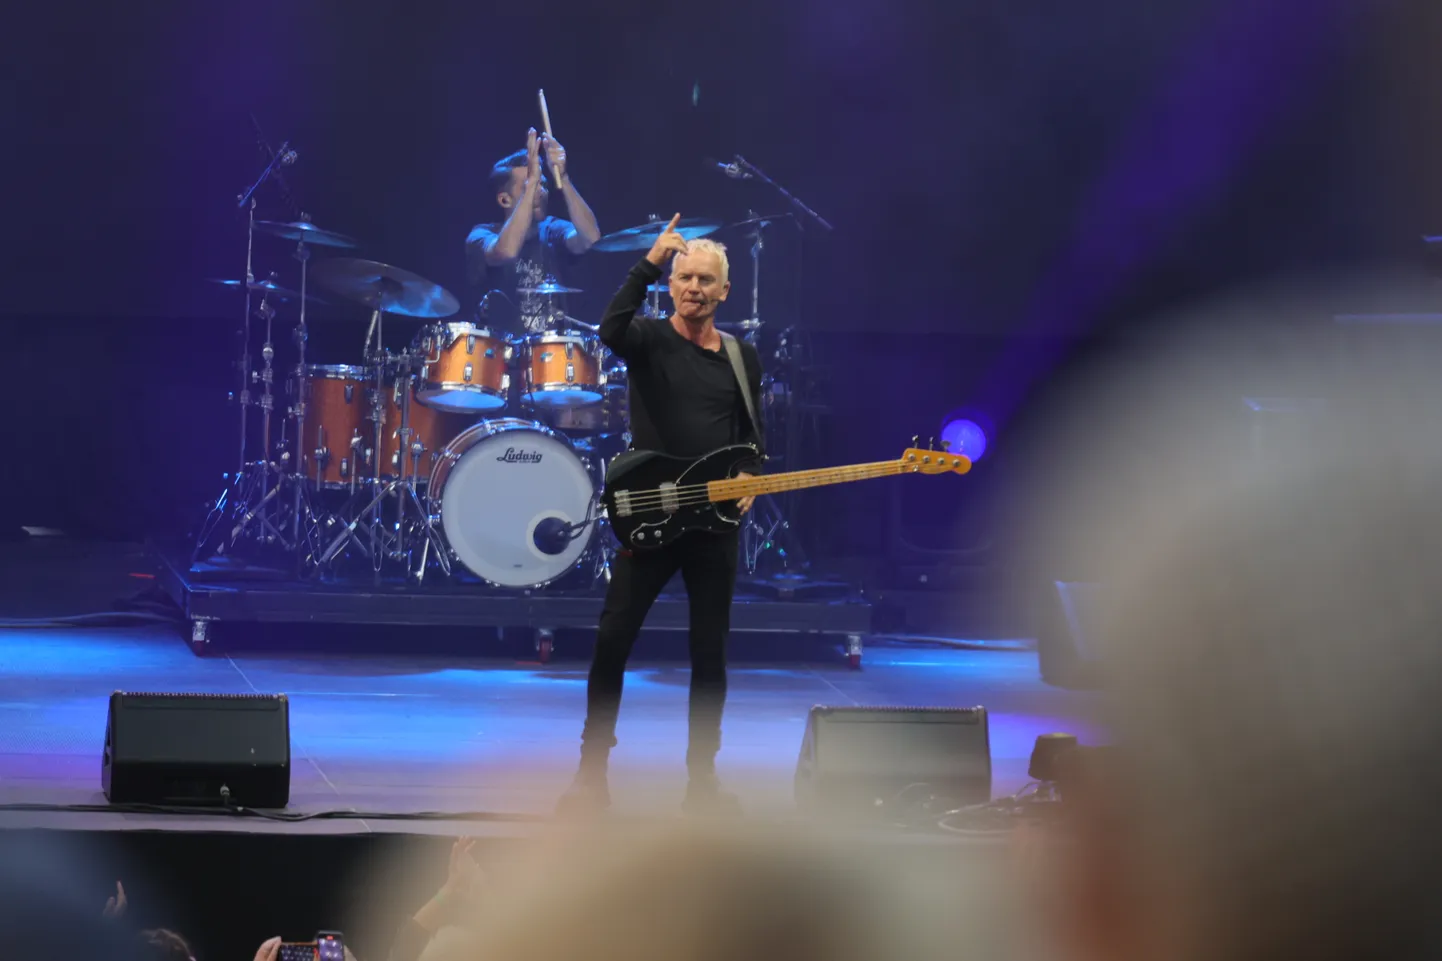 Stingi kontsert Tartu lauluväljakul pani kuulajad puusi õõtsutama, kuid kõvasti kaasa laulma ei hakatud.